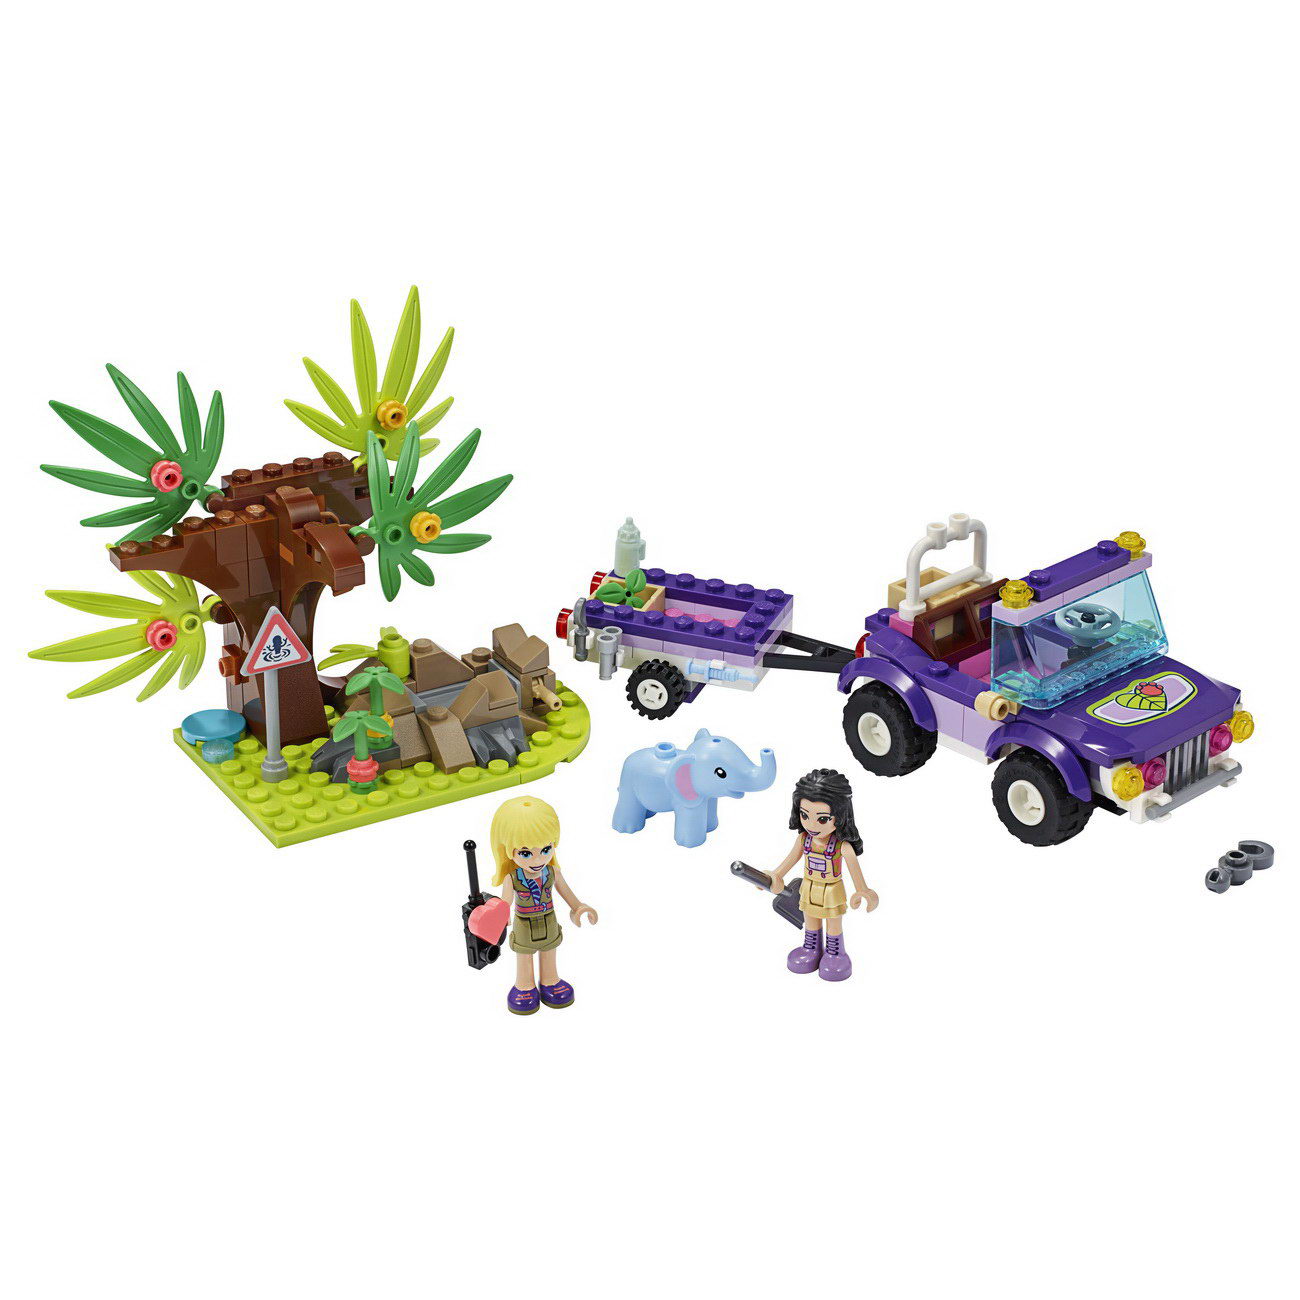 LEGO Friends 41421 - Rettung des Elefantenbabys mit Transporter